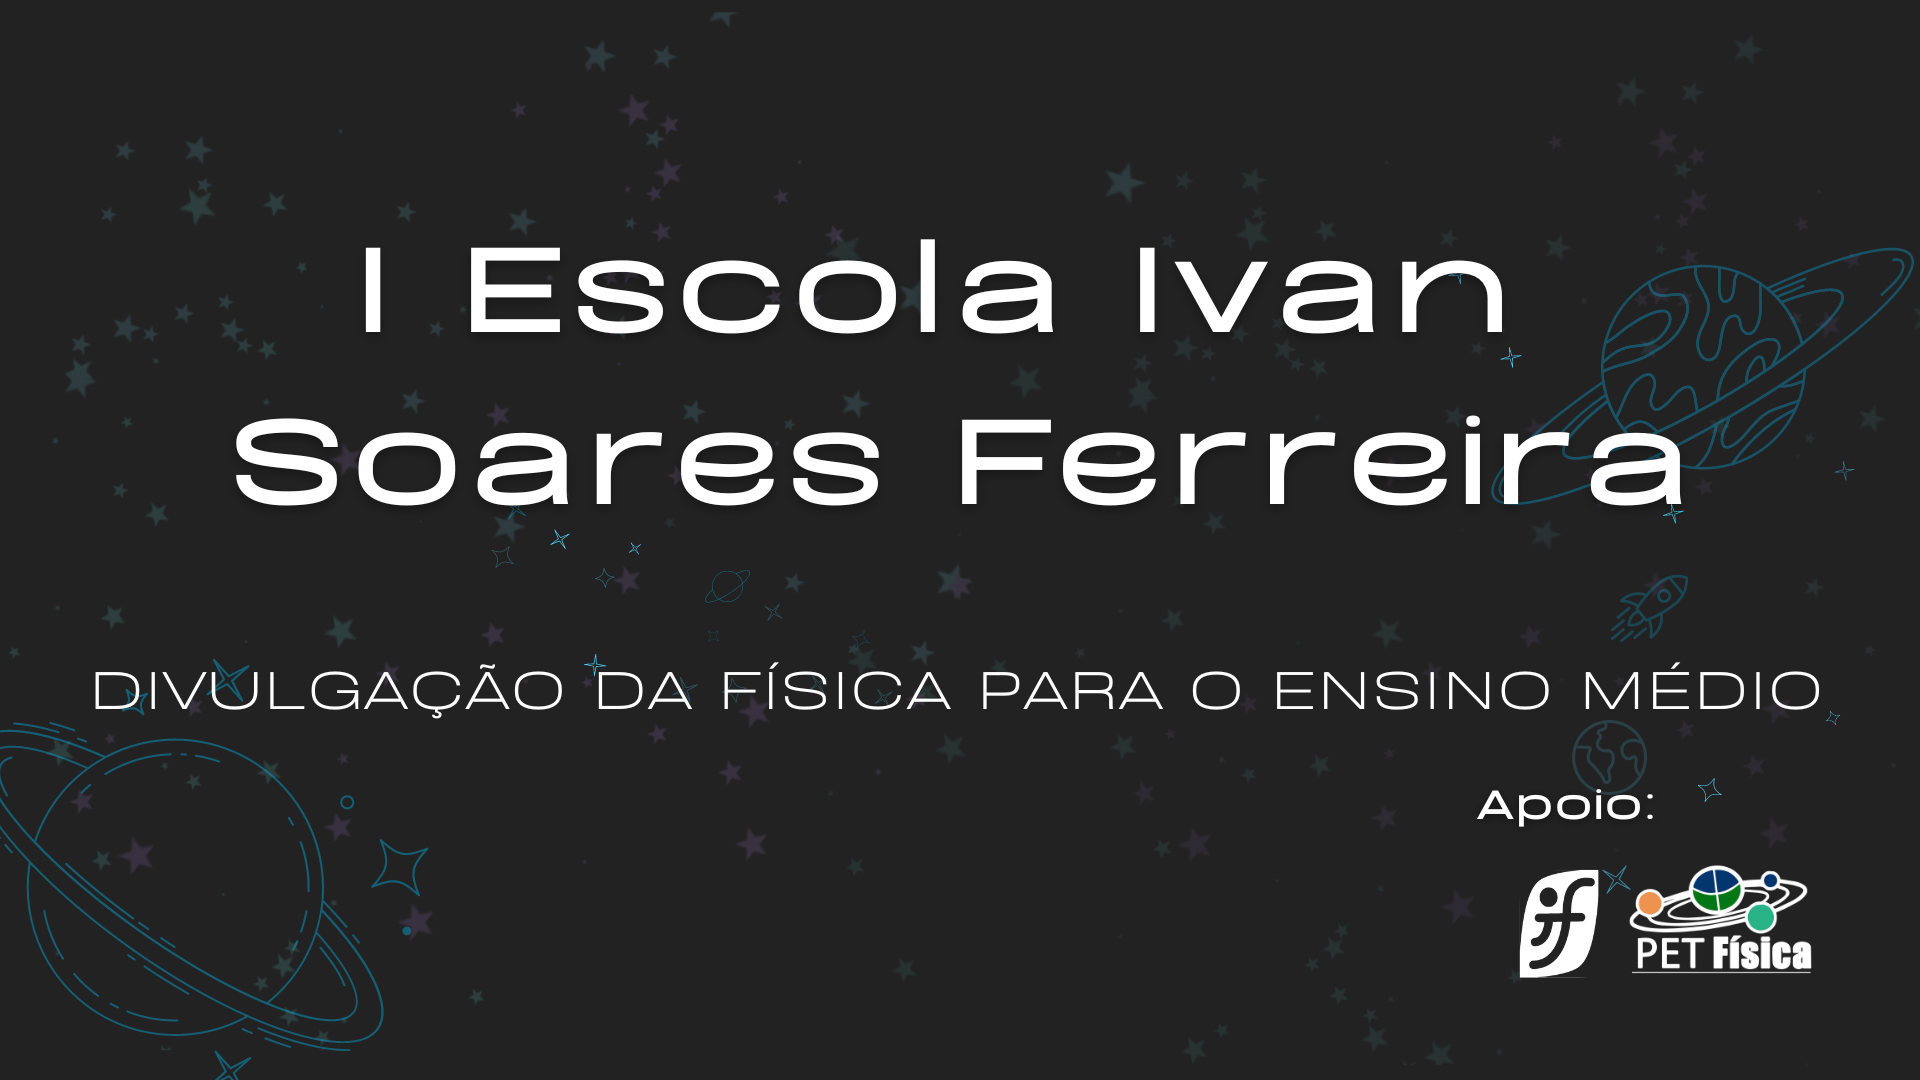 1º Escola Ivan Soares Ferreira